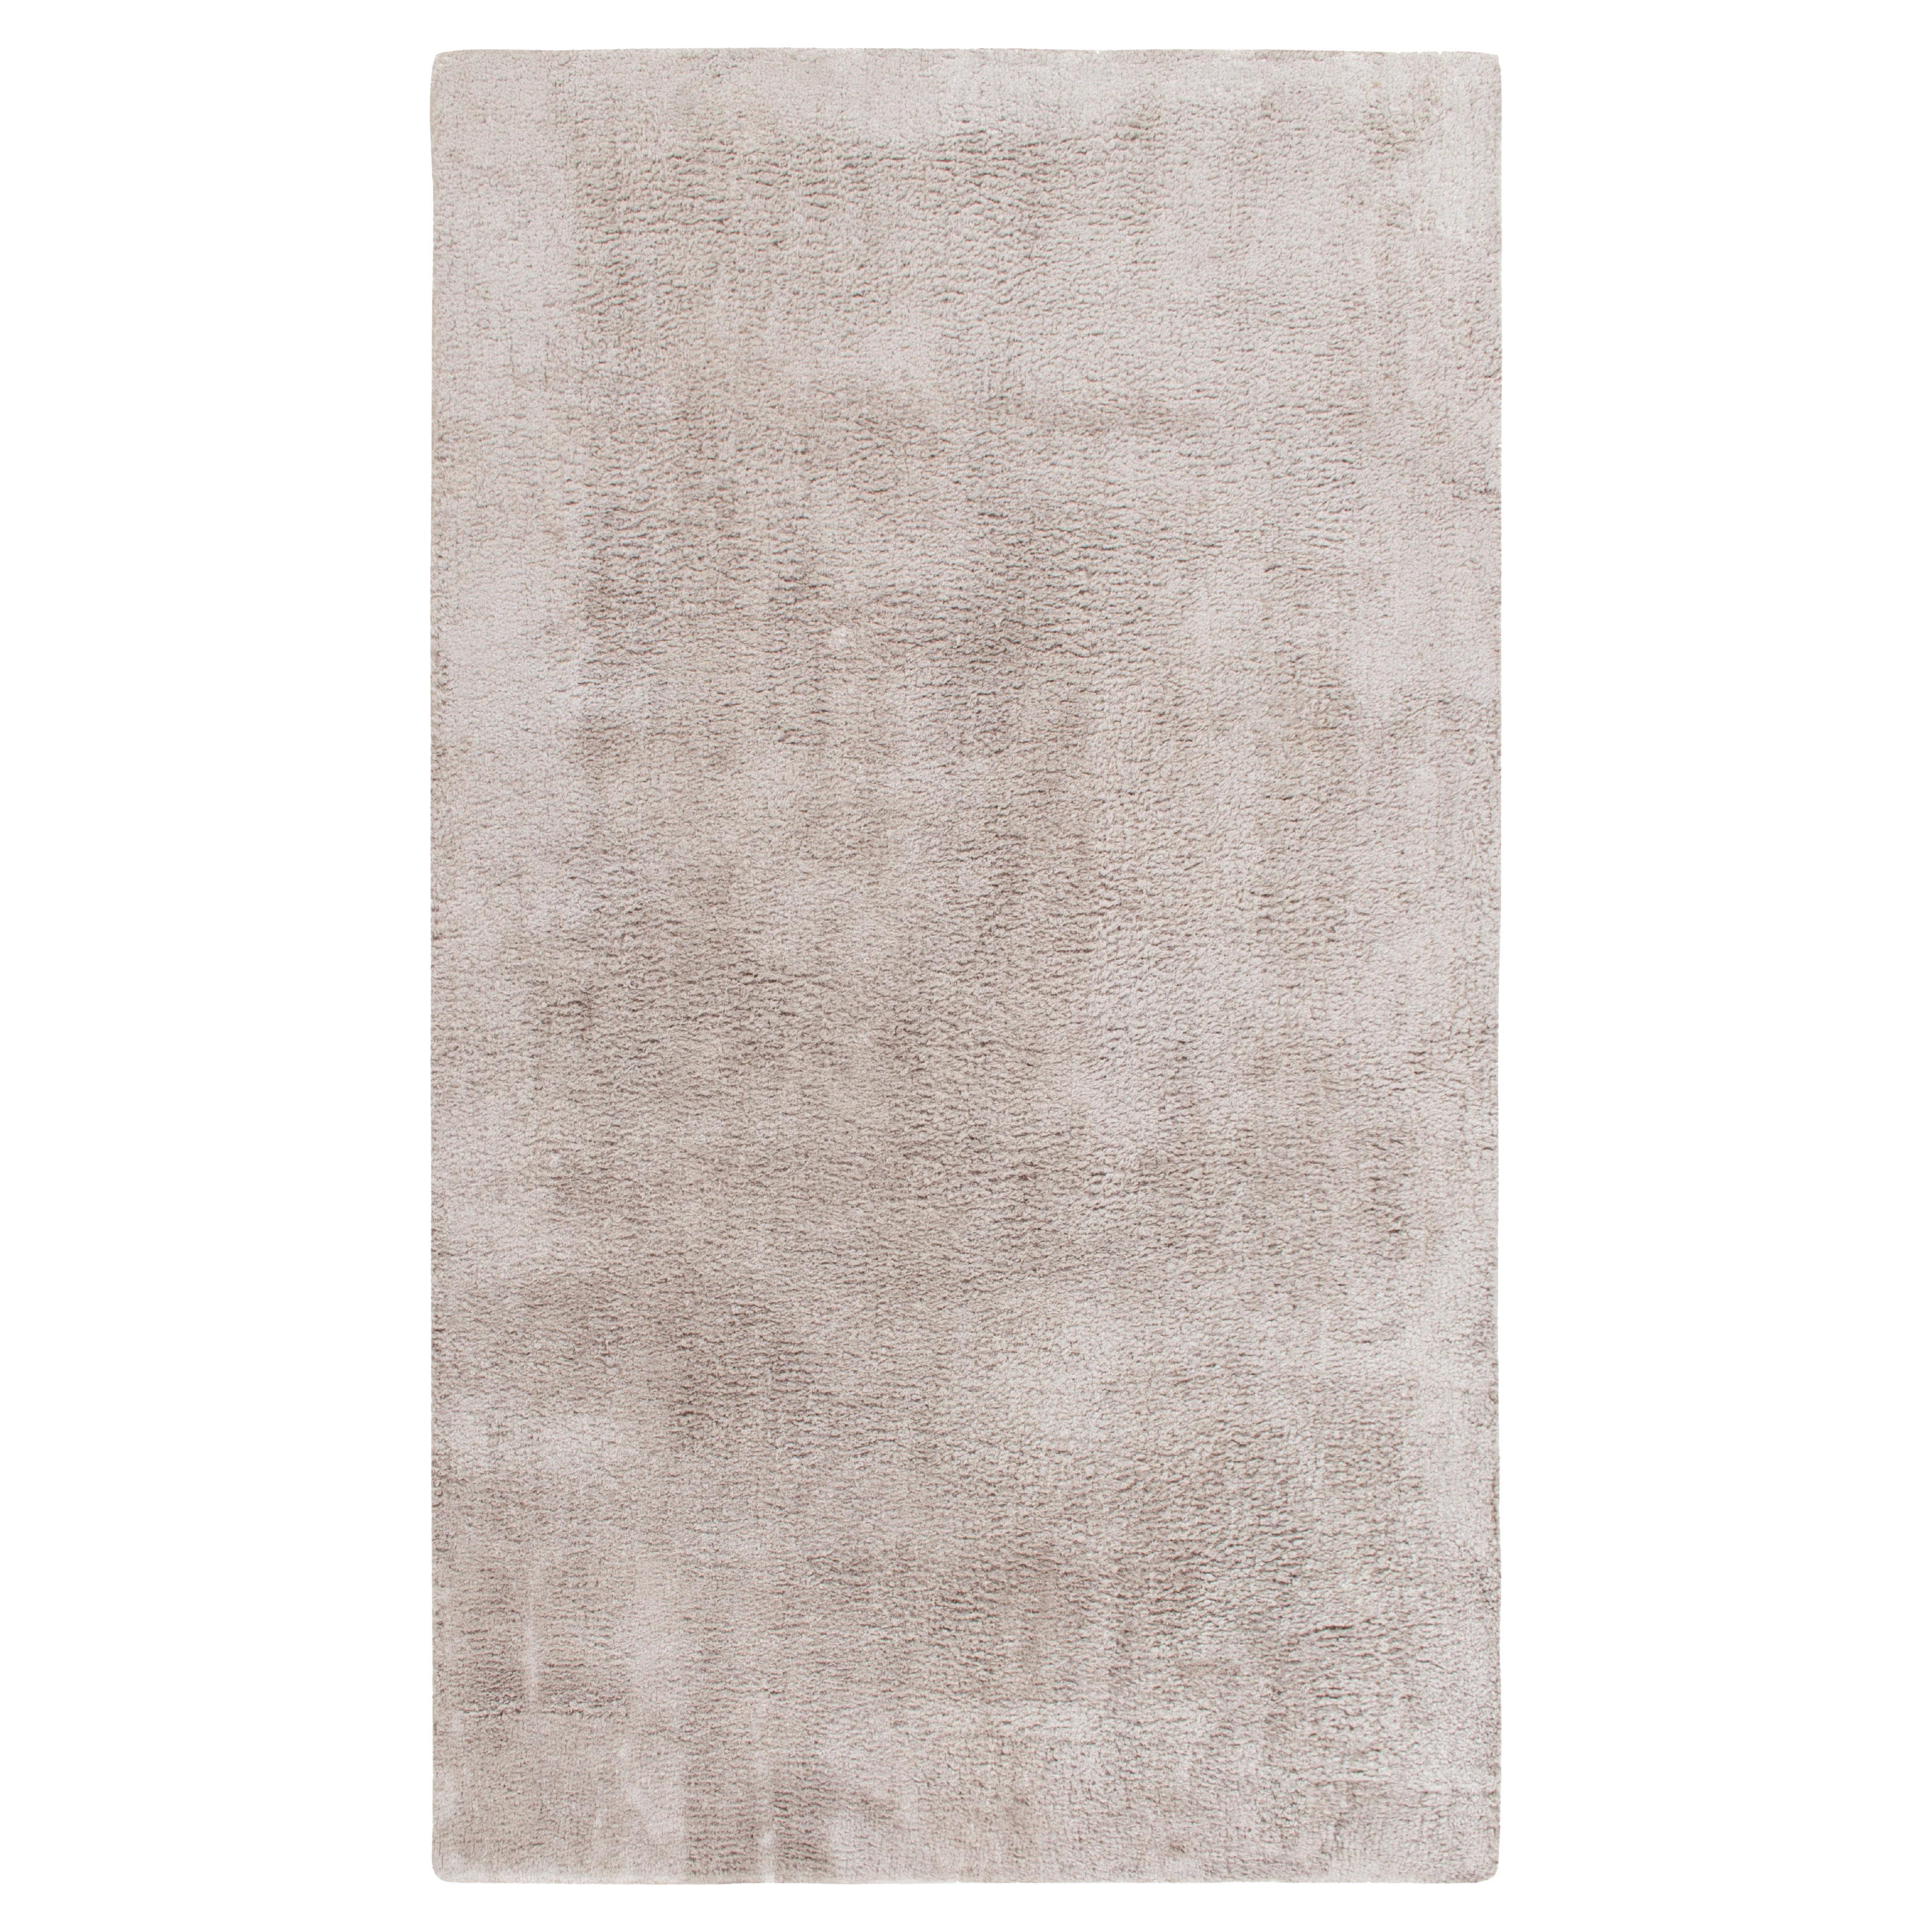 Rug & Kilim's Zeitgenössischer solider grauer Teppich mit Shag-Pile